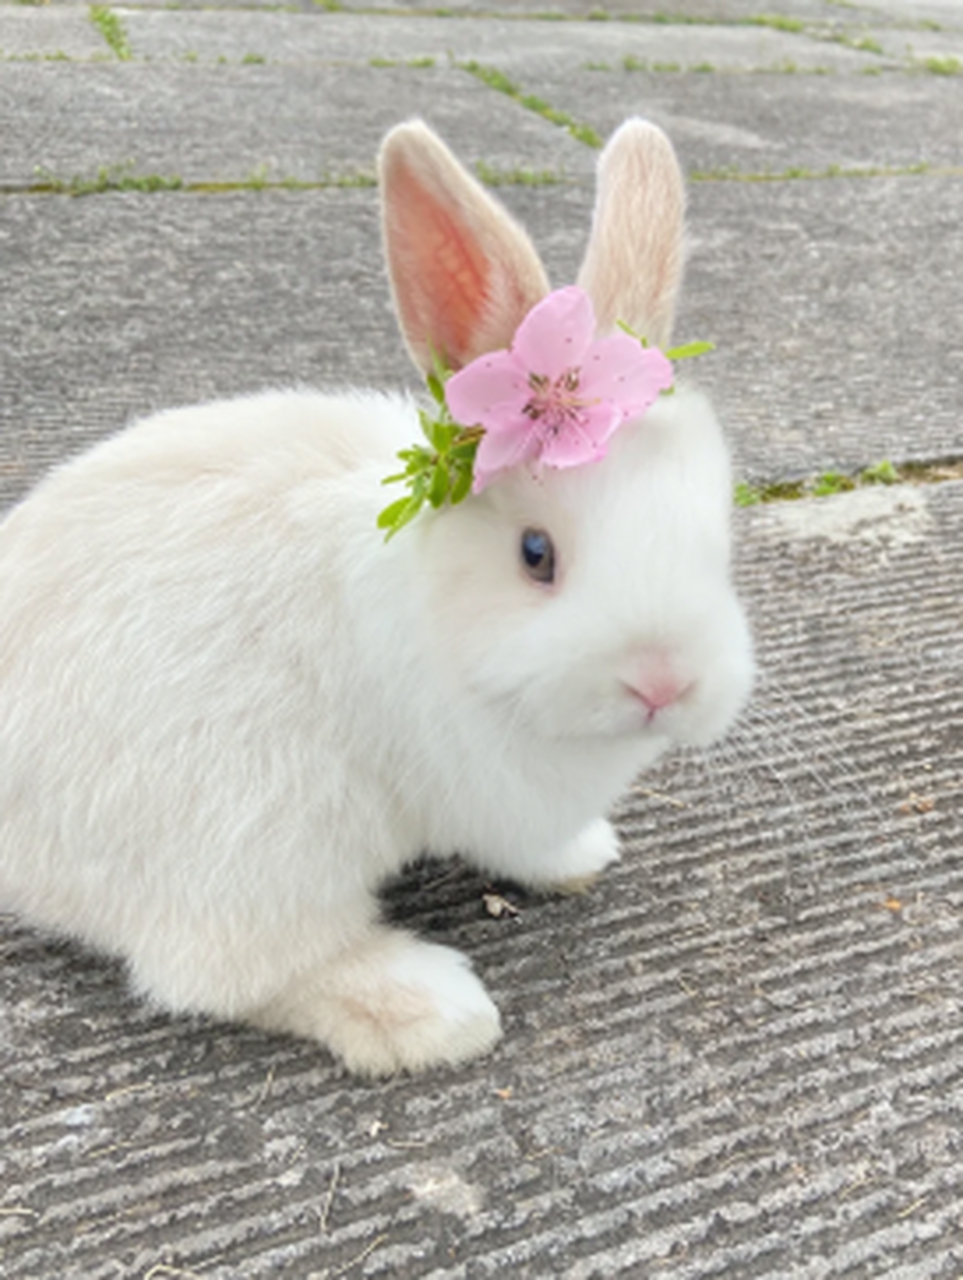 好漂亮的小兔子,白白净净的,真可爱